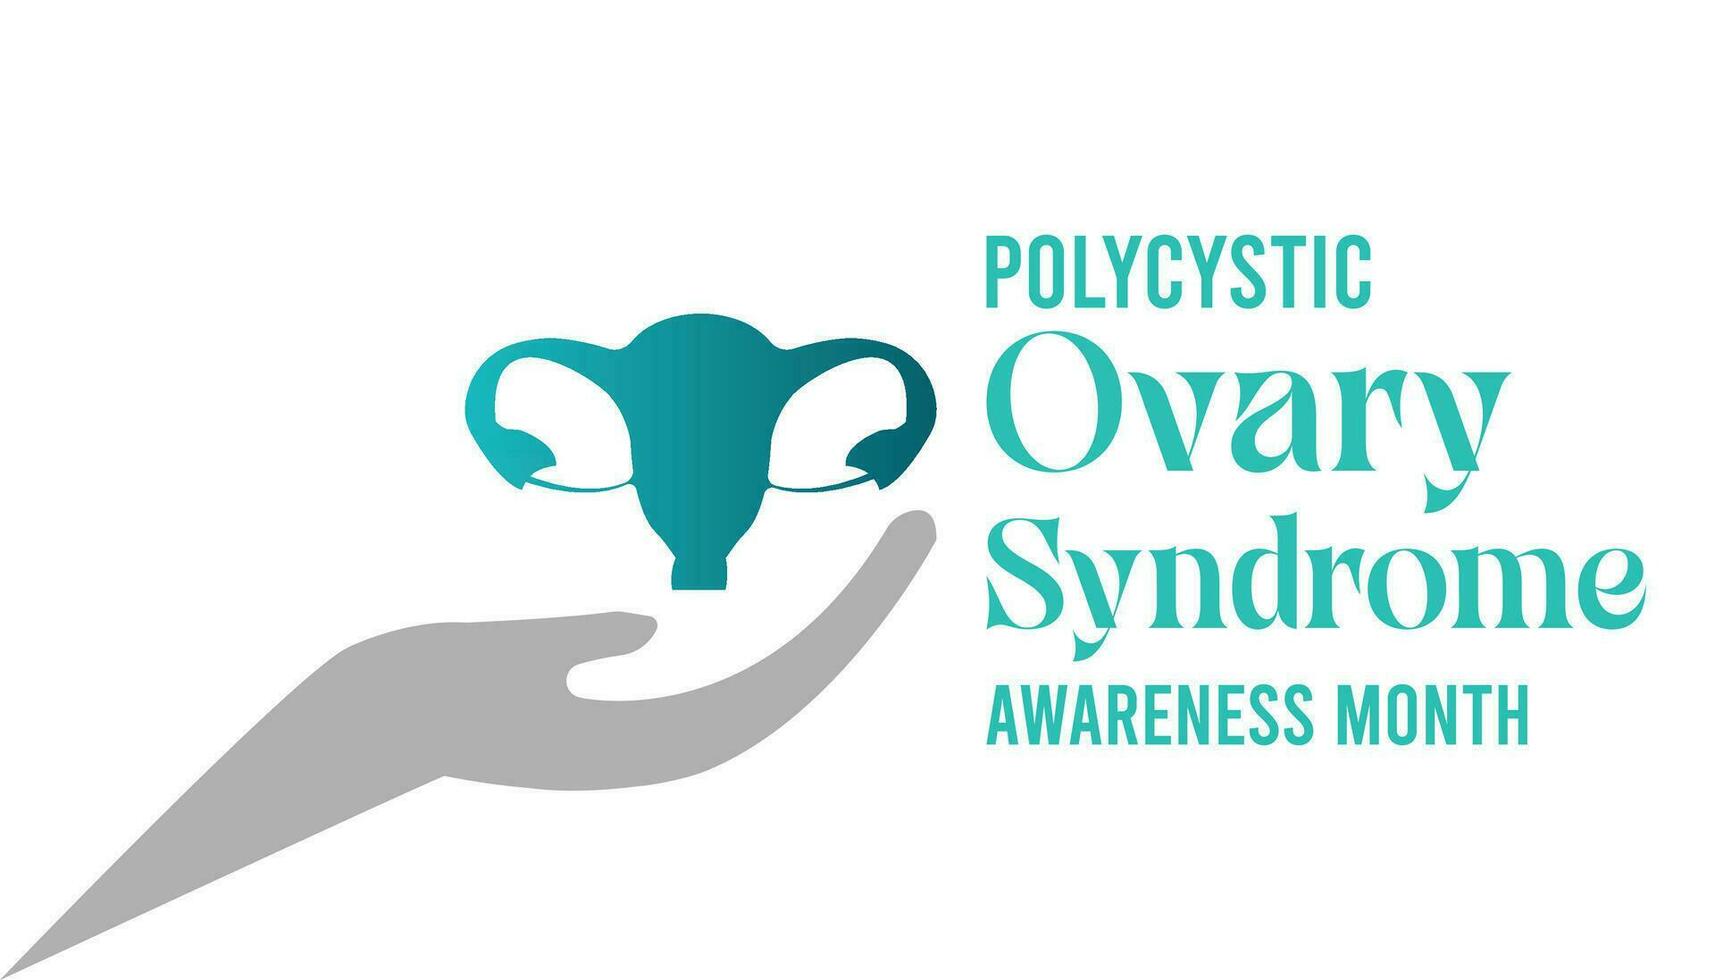 polycystisk äggstockar syndrom medvetenhet månad observerats varje år under september . vektor illustration på de tema av .